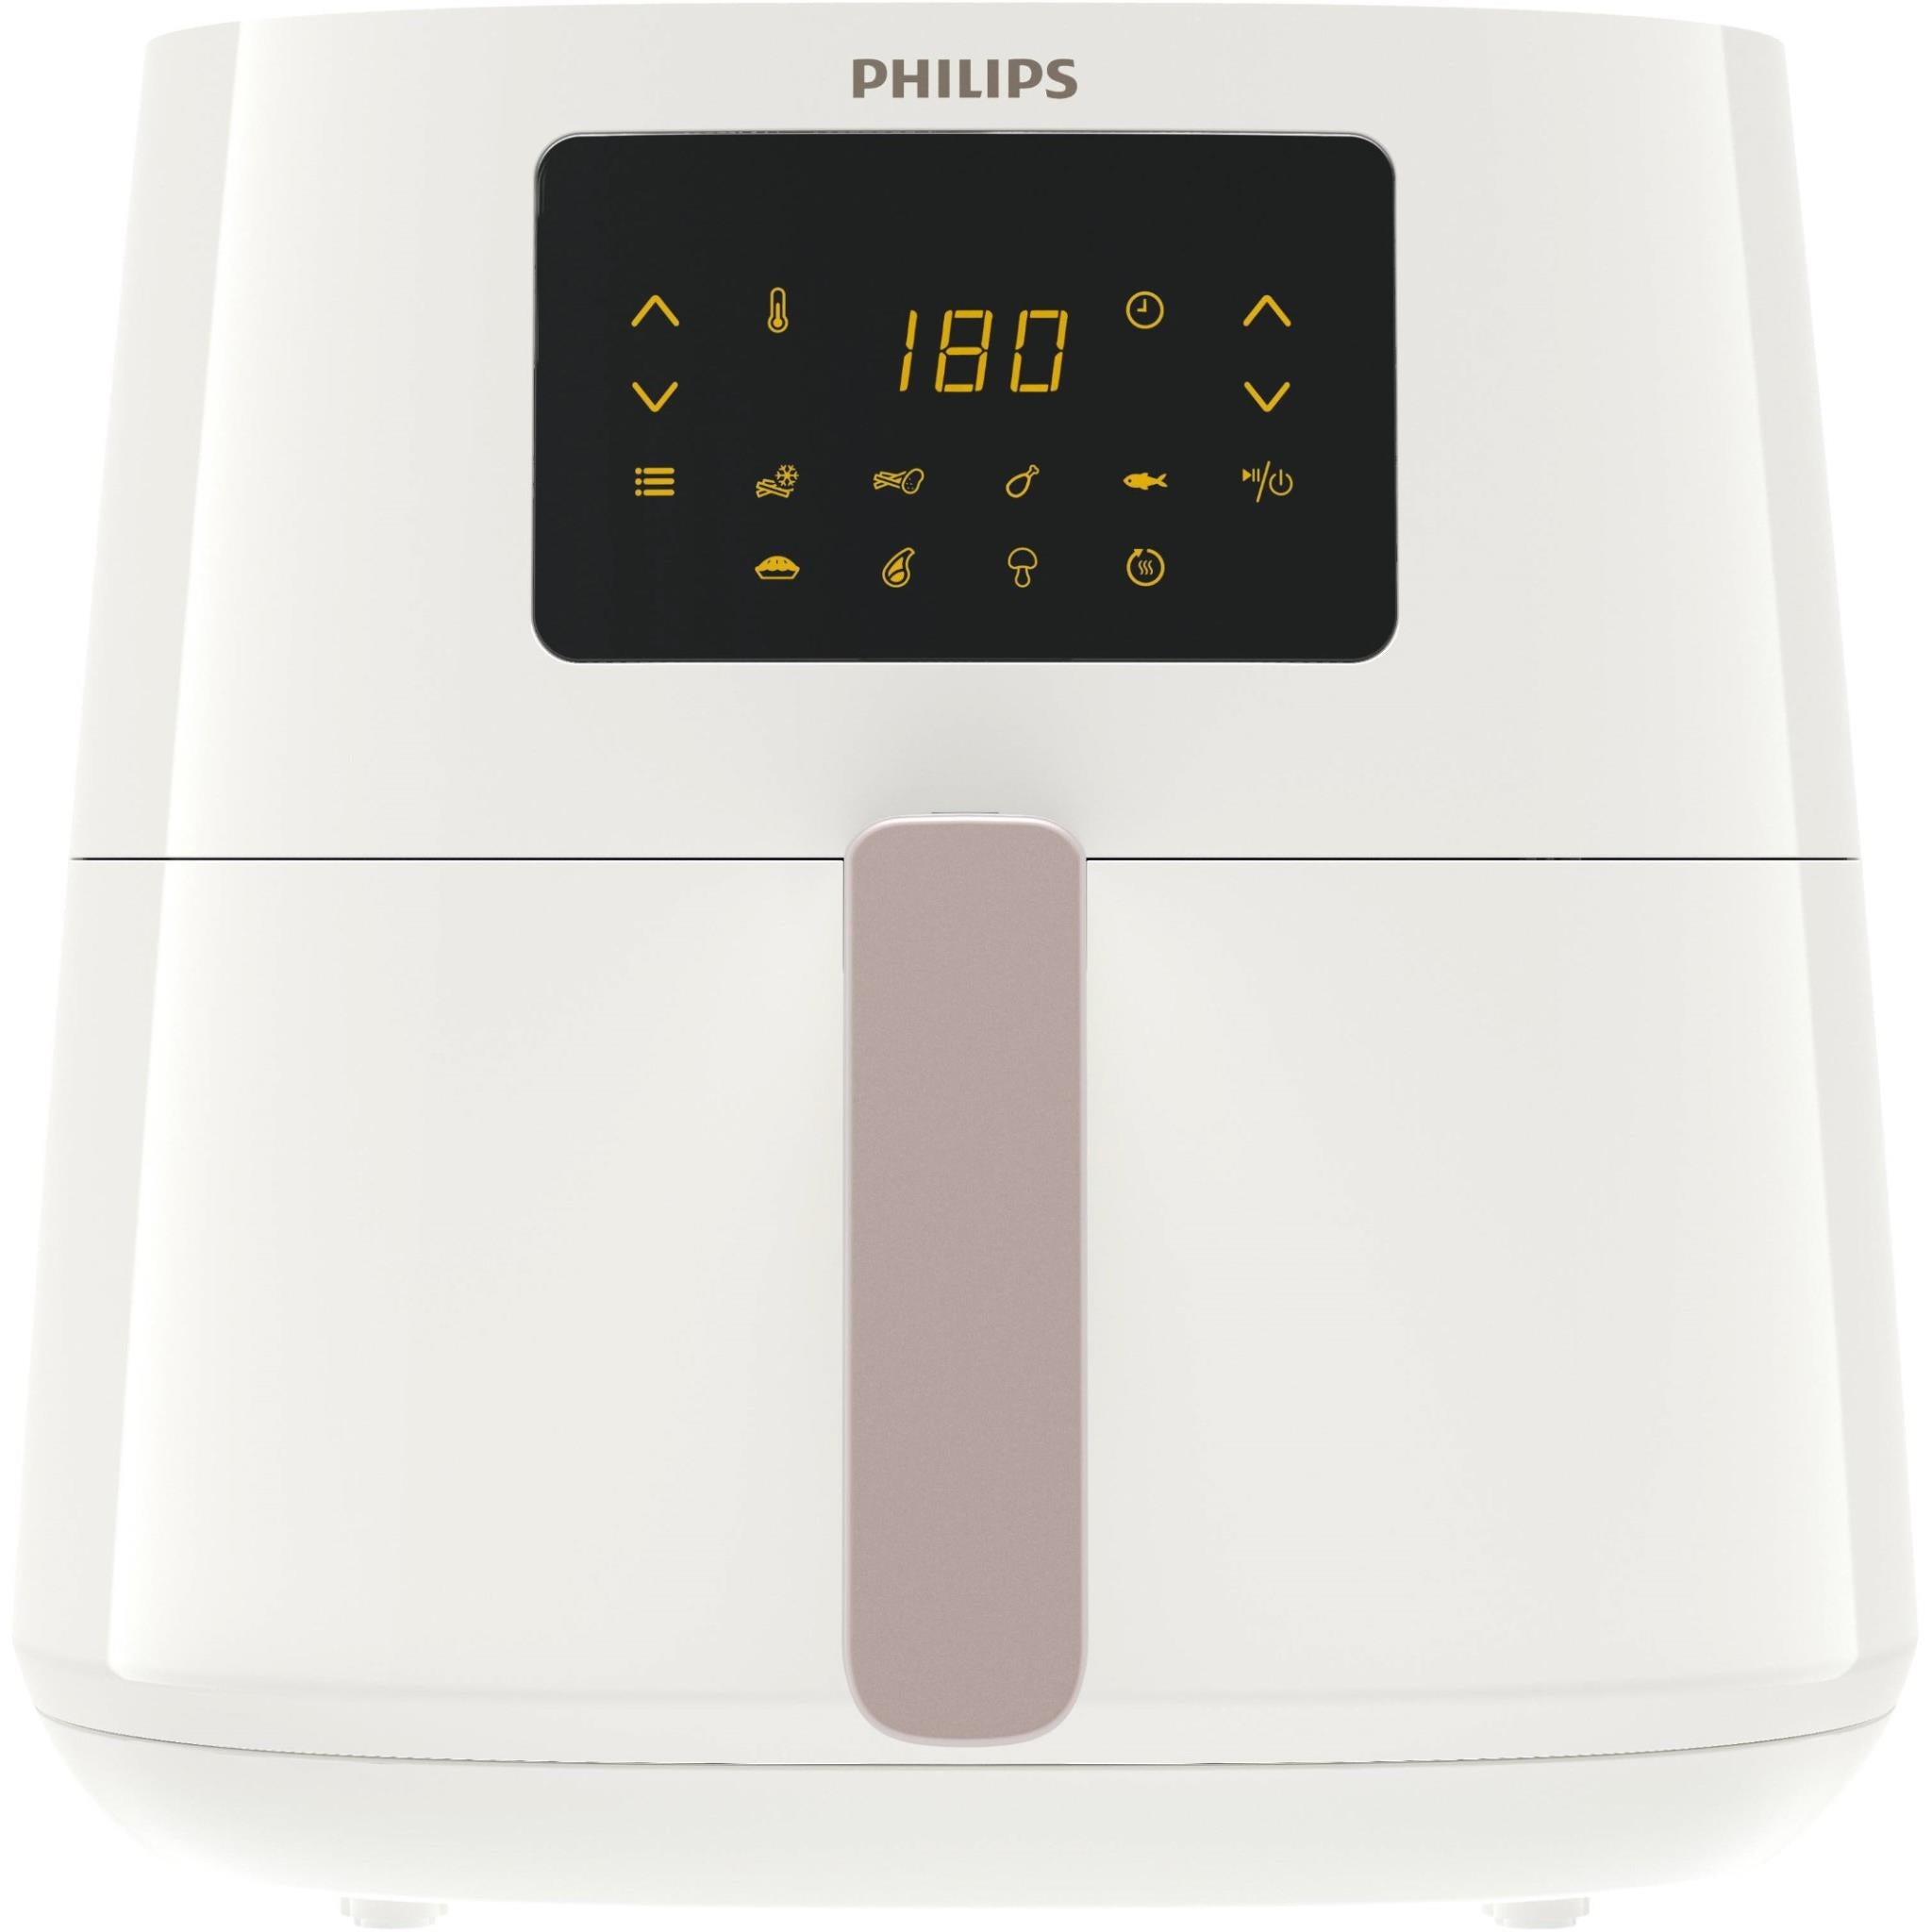 Philips Airfryer XL 